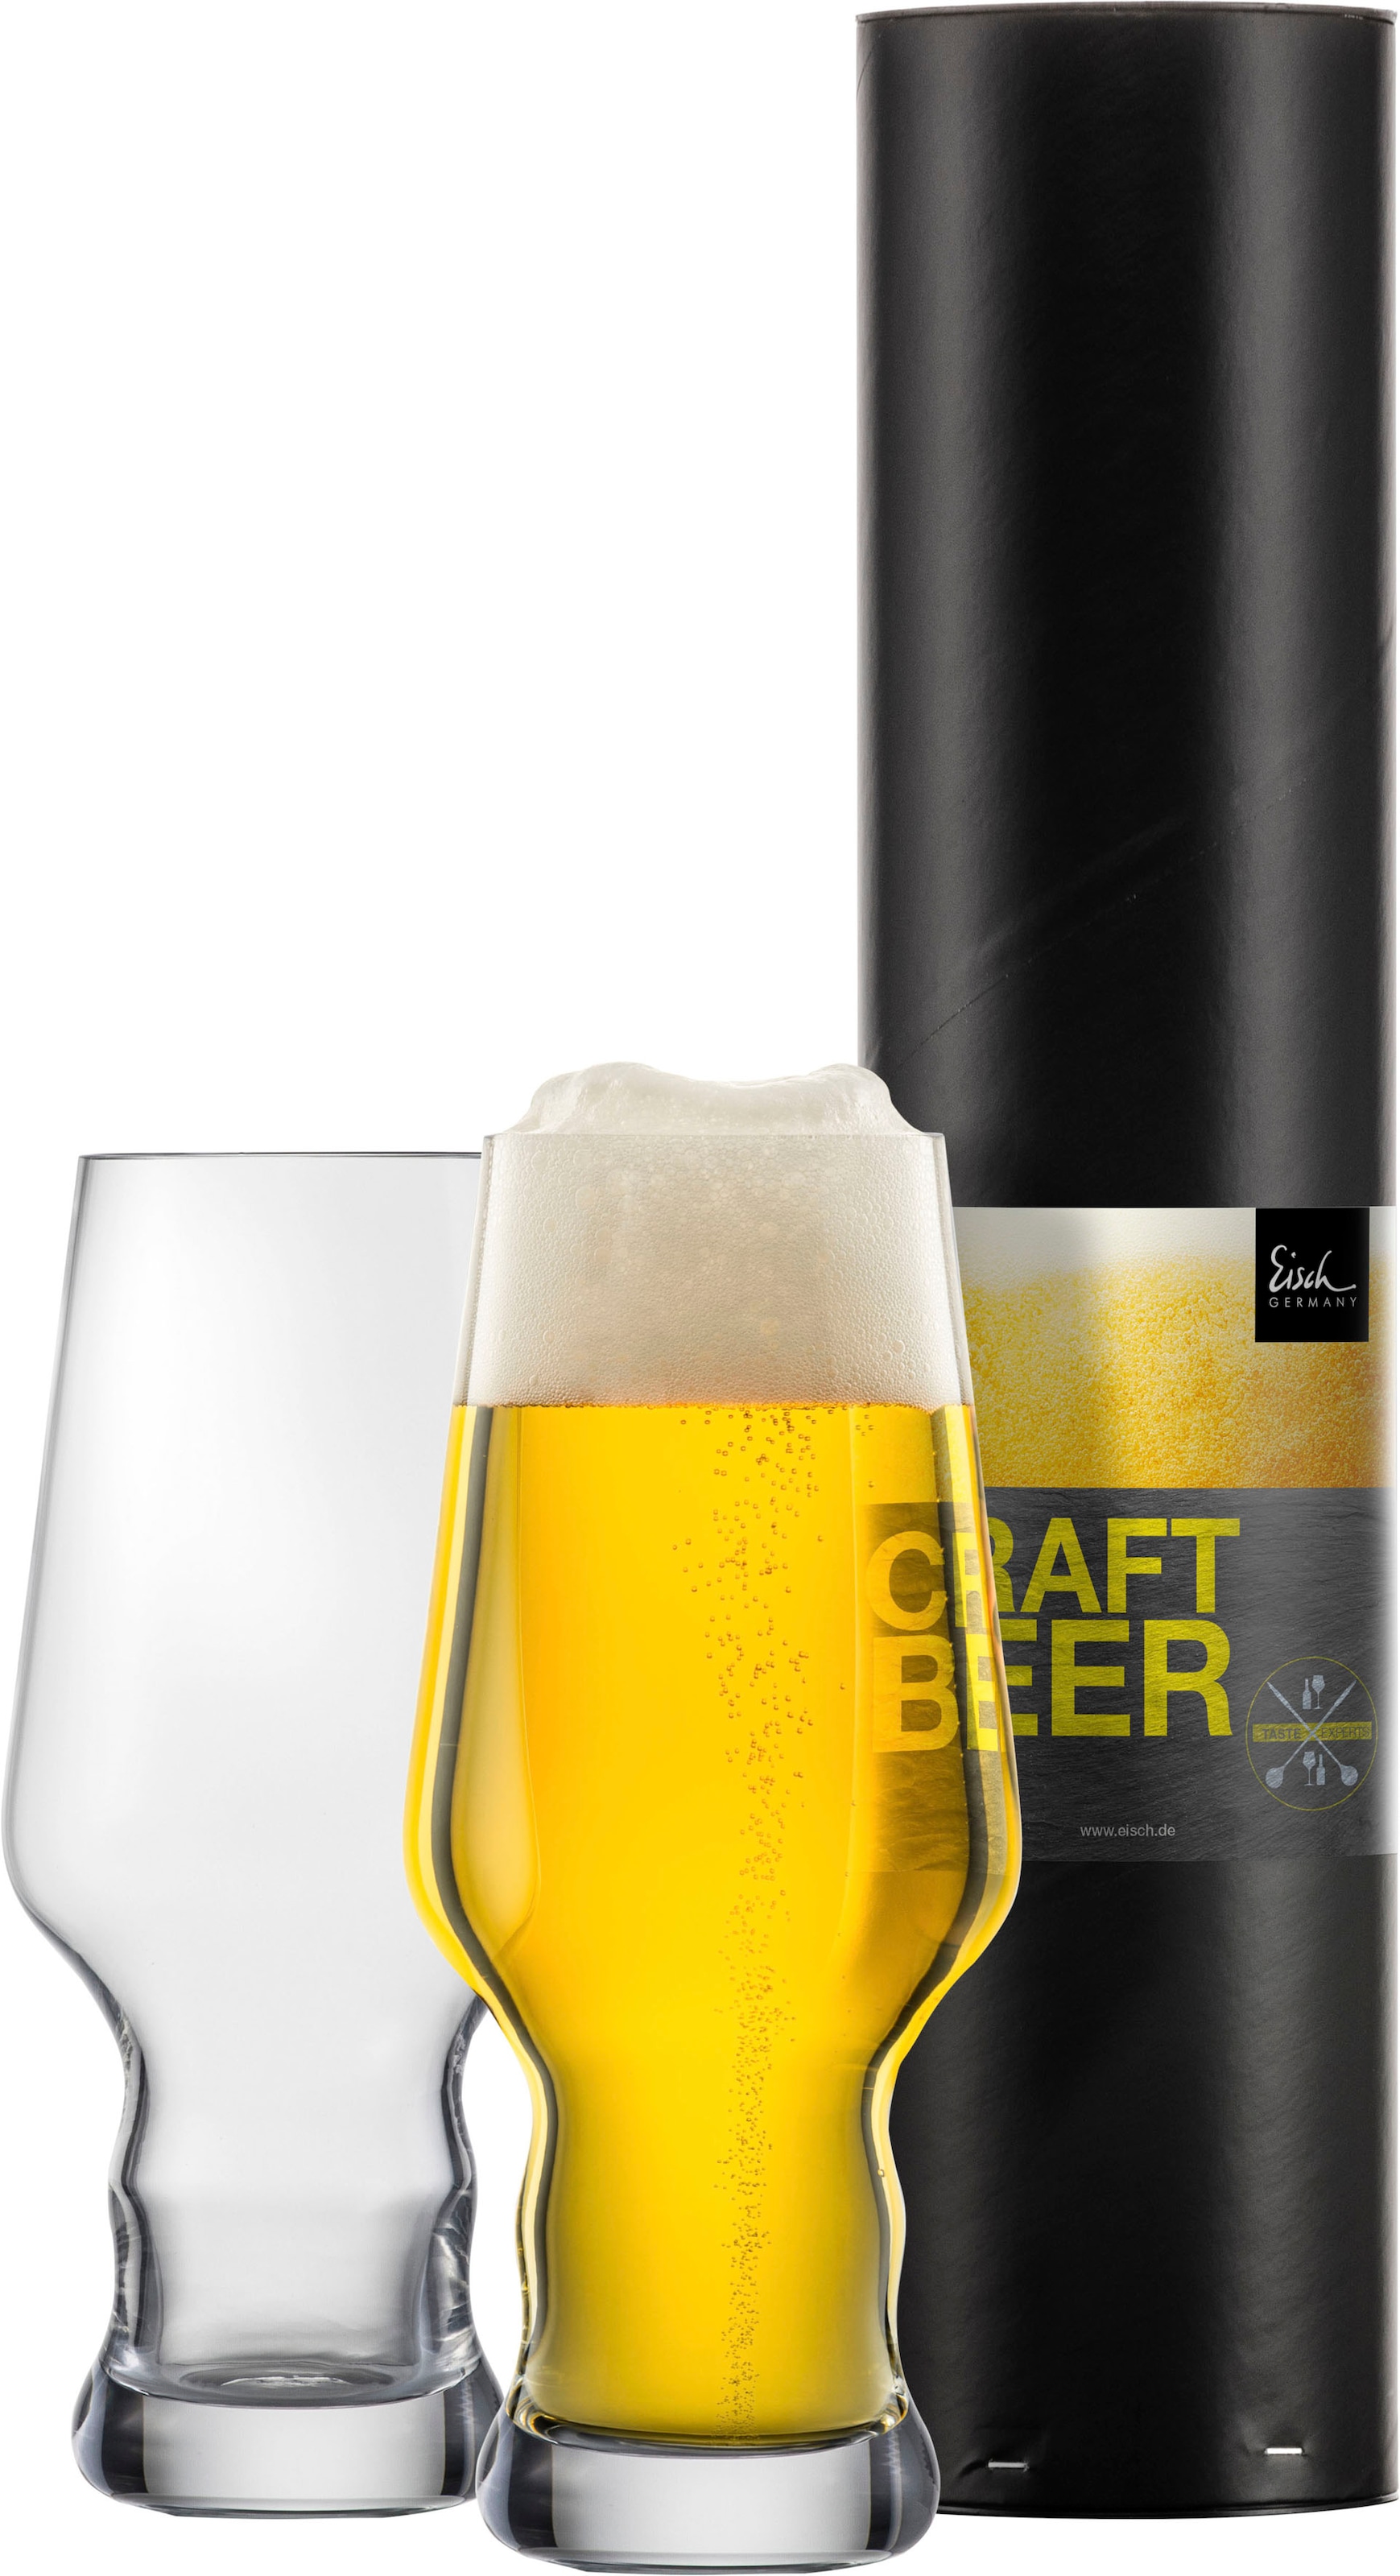 Bierglas »CRAFT BEER EXPERTS«, (Set, 2 tlg., 2 Craft Beer Becher in Geschenkröhre),...